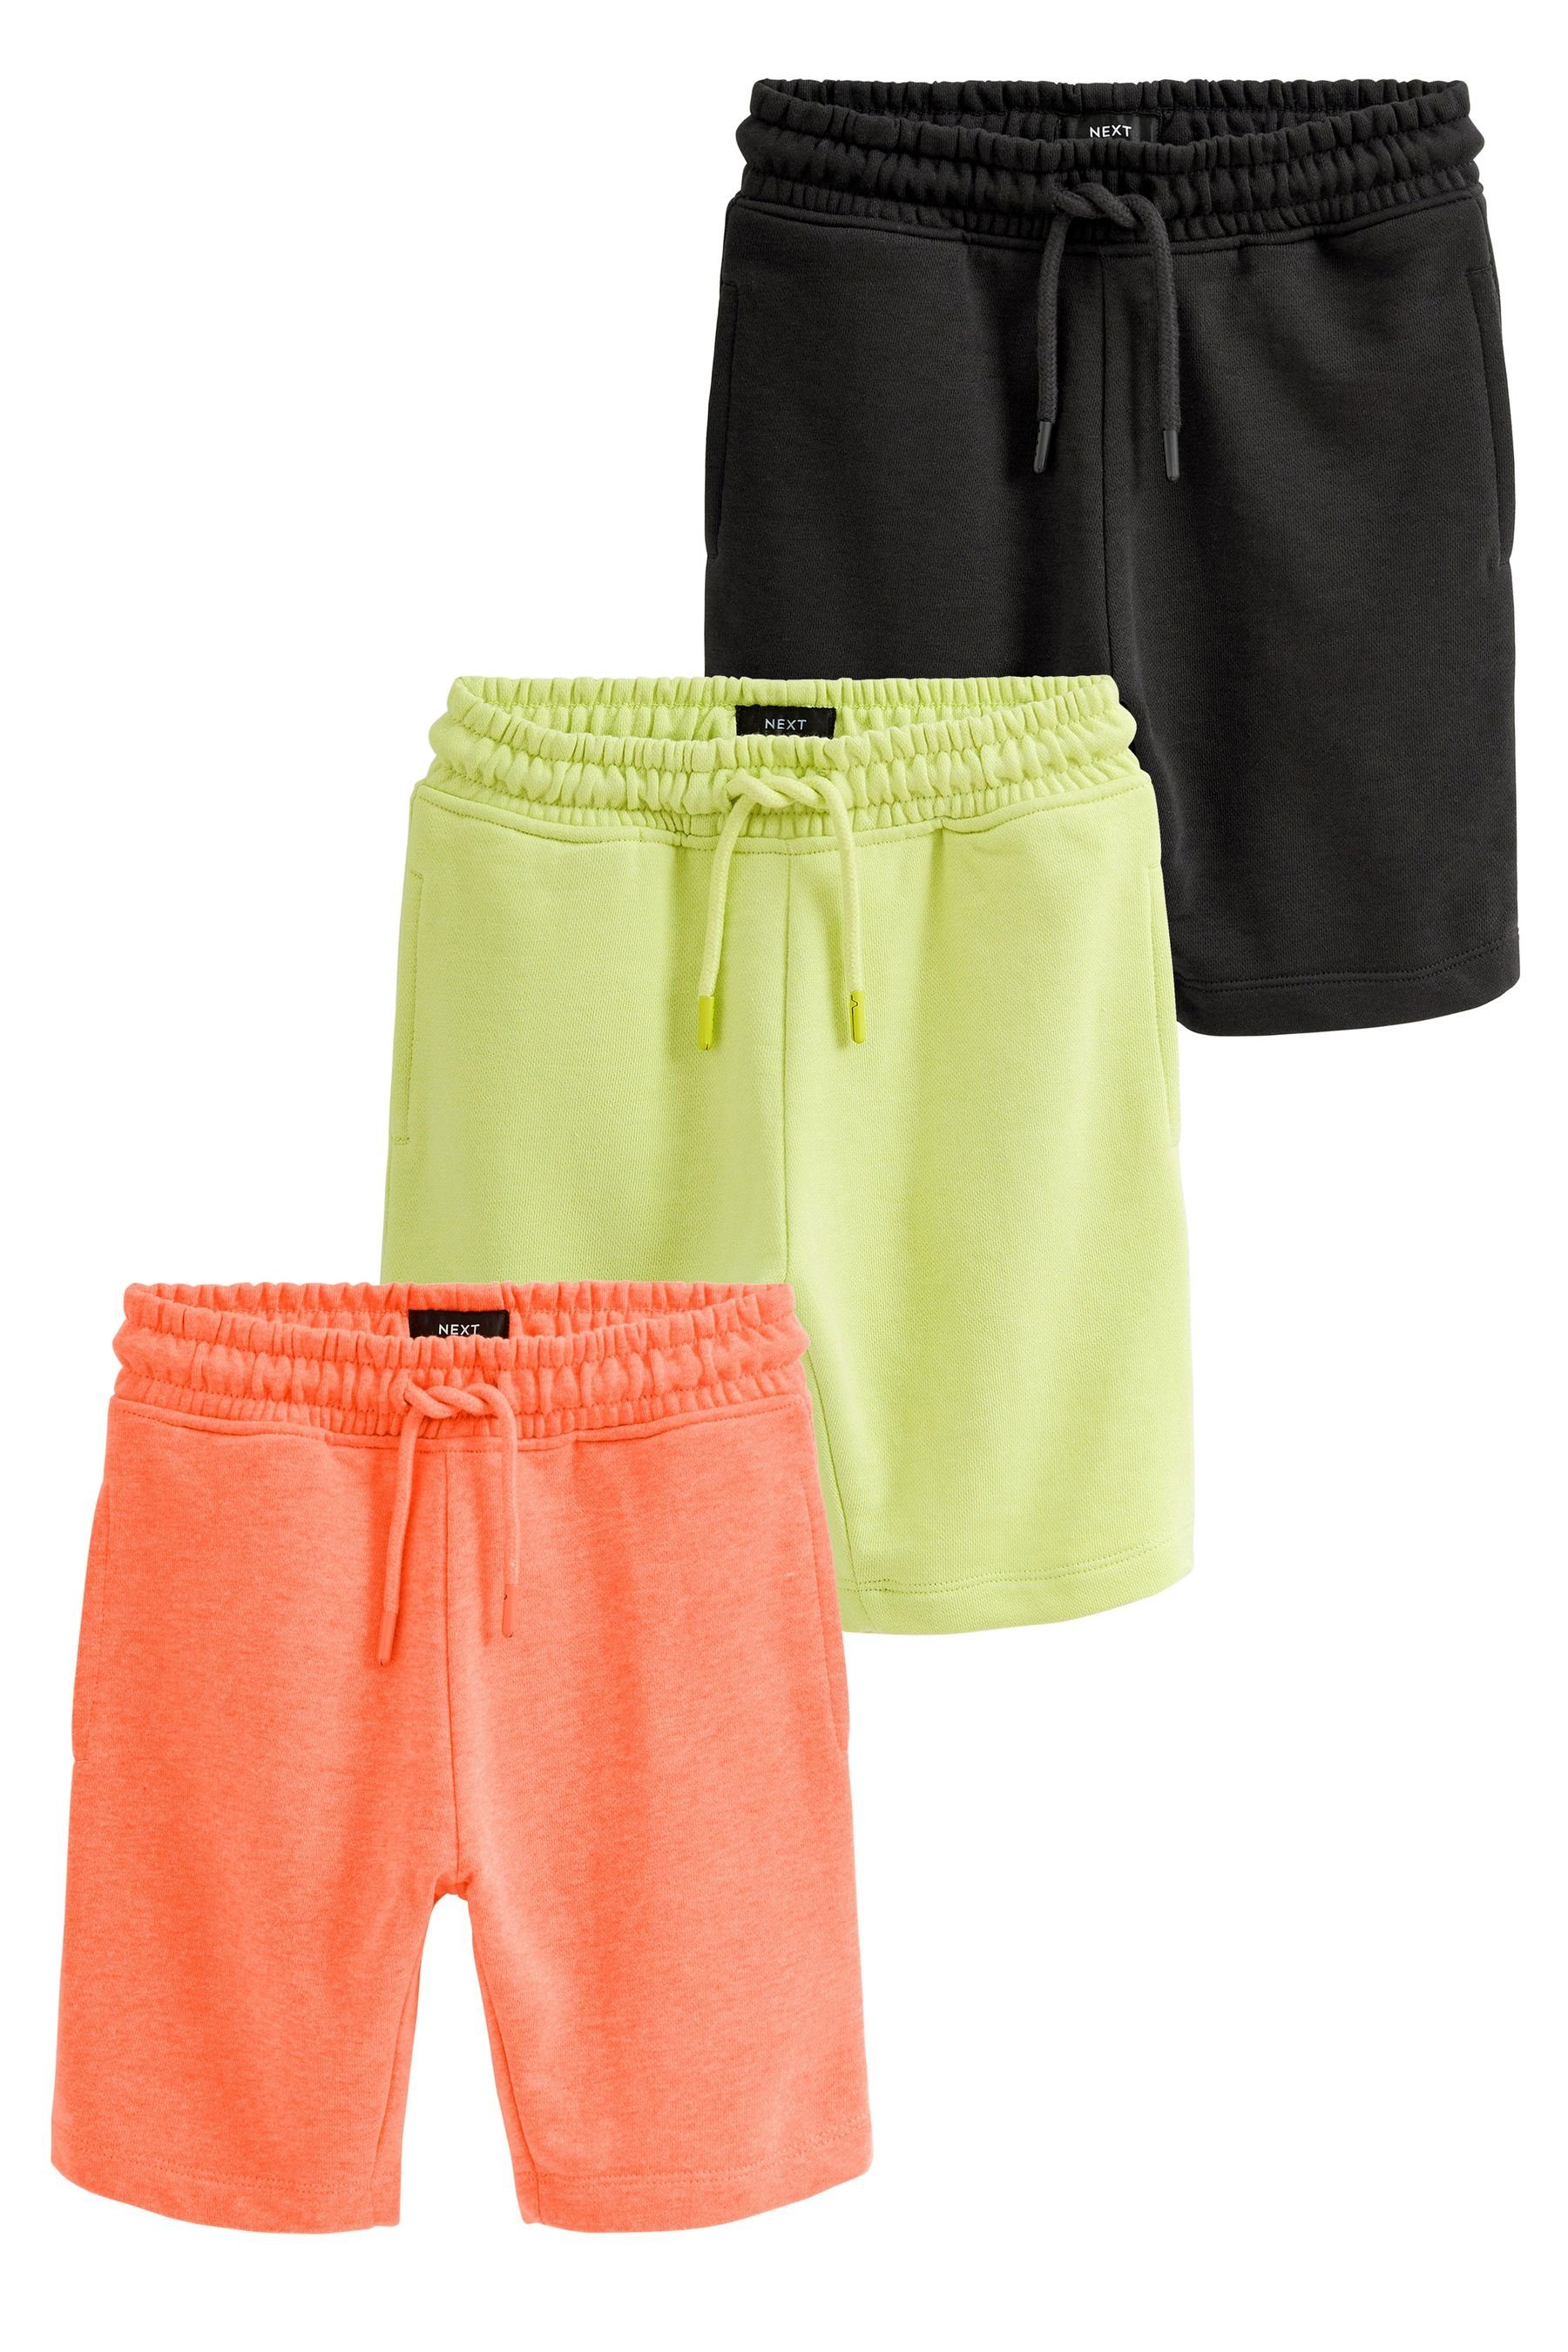 Next Sweatshorts Jersey-Shorts, 3er-Pack (3-tlg) Black/Orange/Yellow